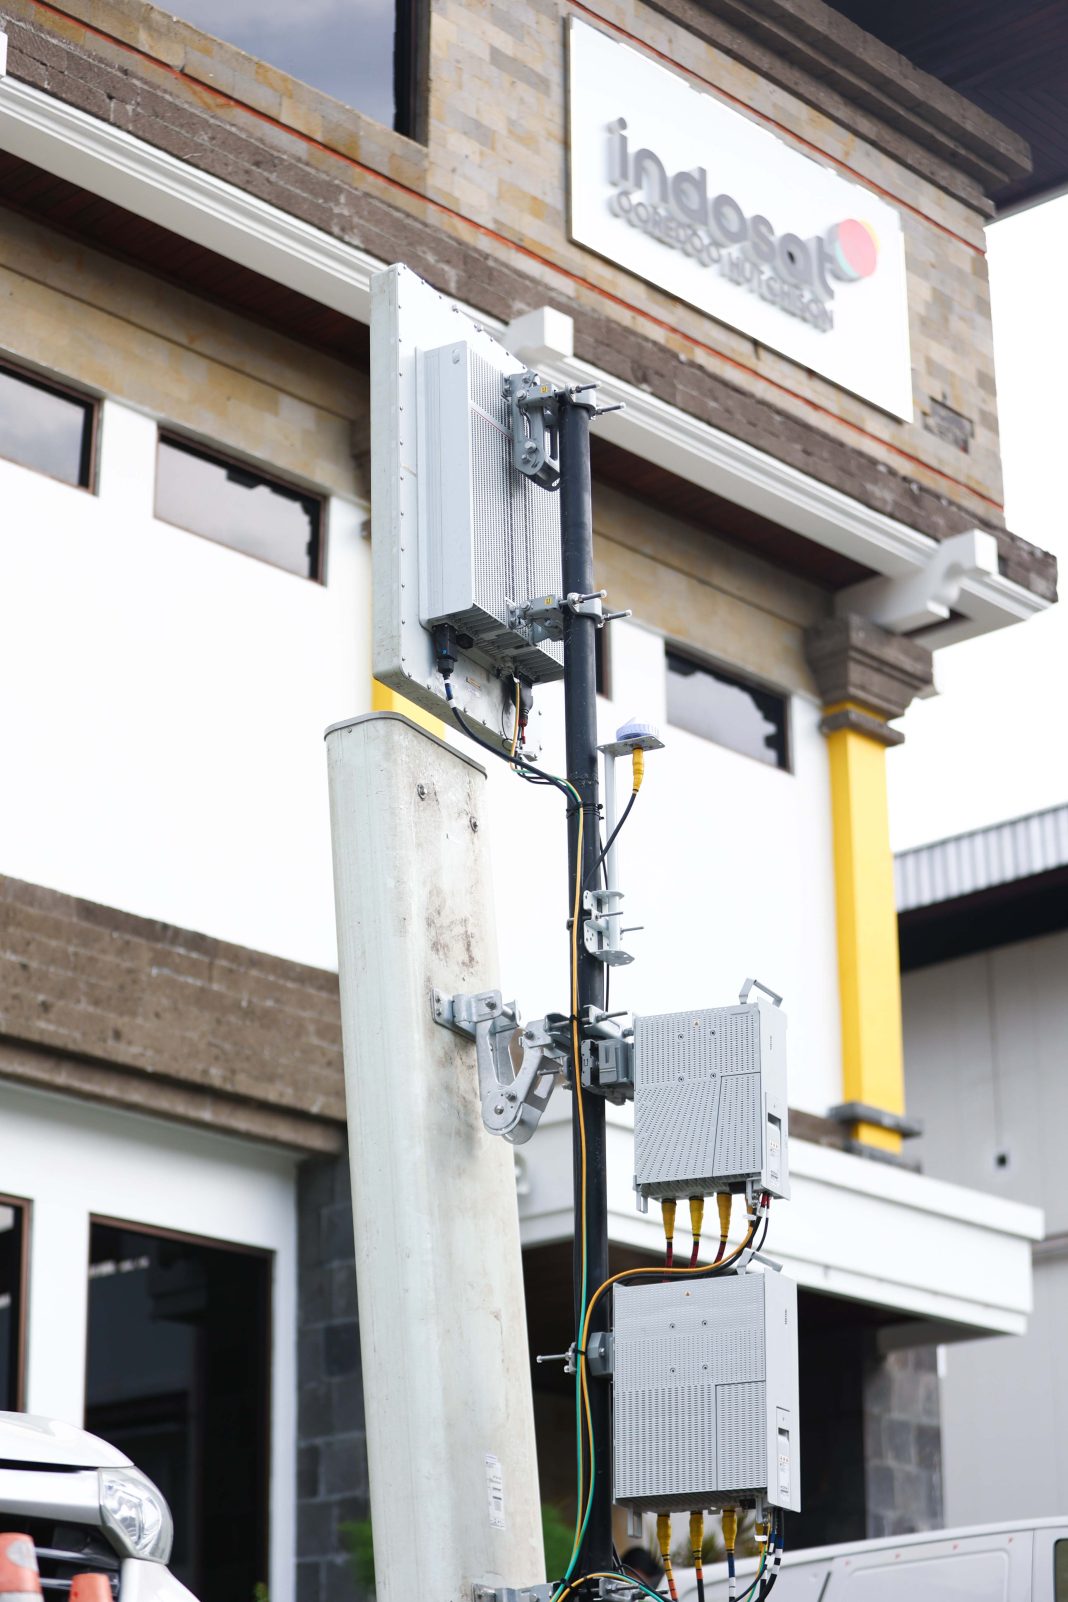 Indosat Ooredoo Hutchison (IOH) mengimplementasikan teknologi ramah lingkungan atau teknologi hijau (green technology) dalam jaringan 5G-nya sebagai persiapan menyambut puncak Presidensi G20 Indonesia pada 15-16 November di Nusa Dua, Bali. Modul All-in- One 3,5 GHz canggih dari Huawei yang memungkinkan penyederhanaan lokasi dengan satu antena aktif dan pasif serta dikombinasikan dengan modul radio dual band 5516 sehingga lebih ramah lingkungan